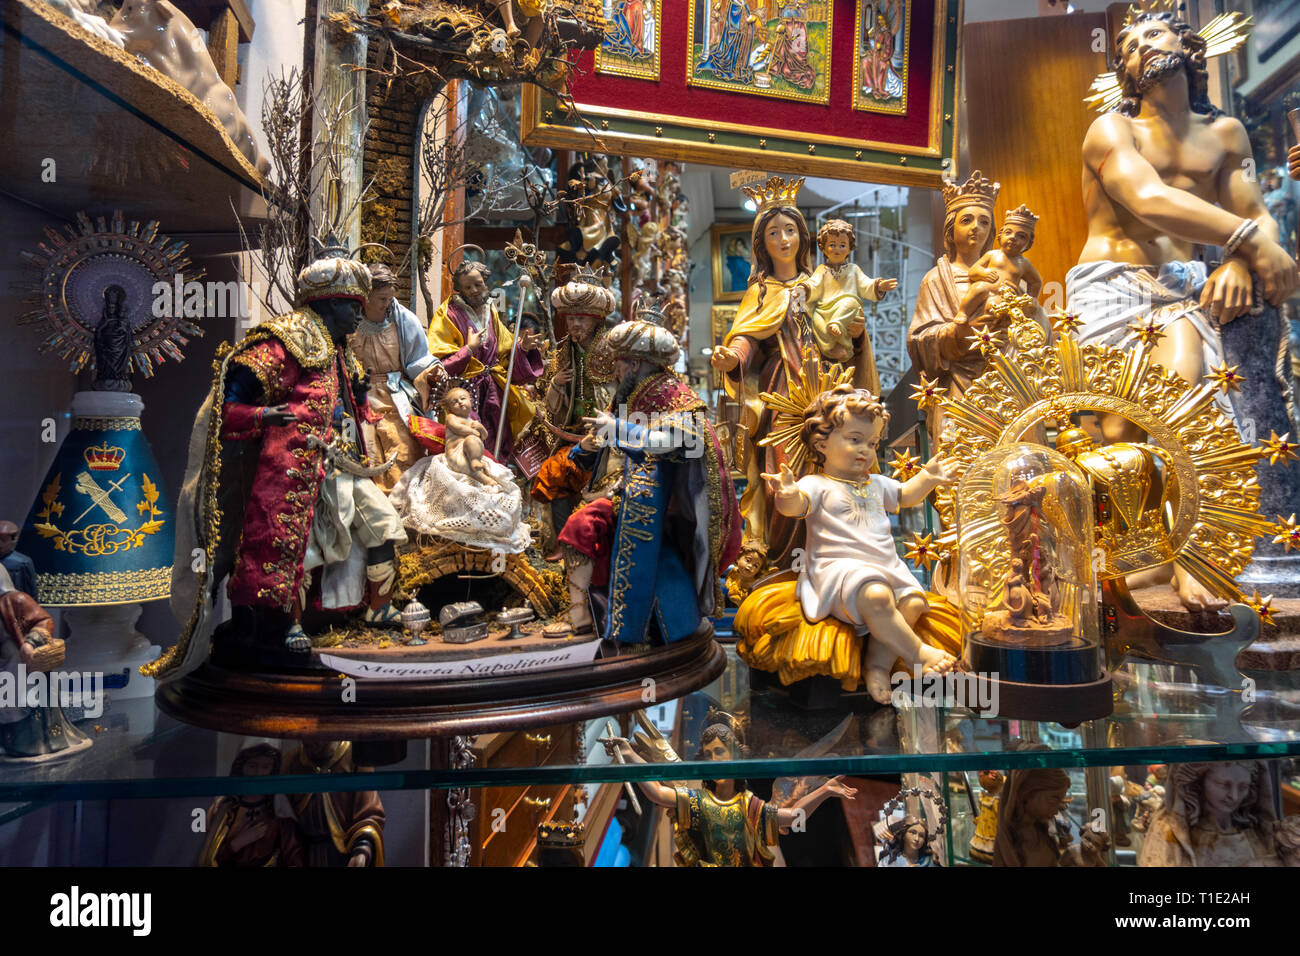 Madrid shop Articulos Religiosos El Angel. Religiöse Artikel speichern, Fenster mit Krippen, Baby Jesus und Katholischen Figuren. Stockfoto